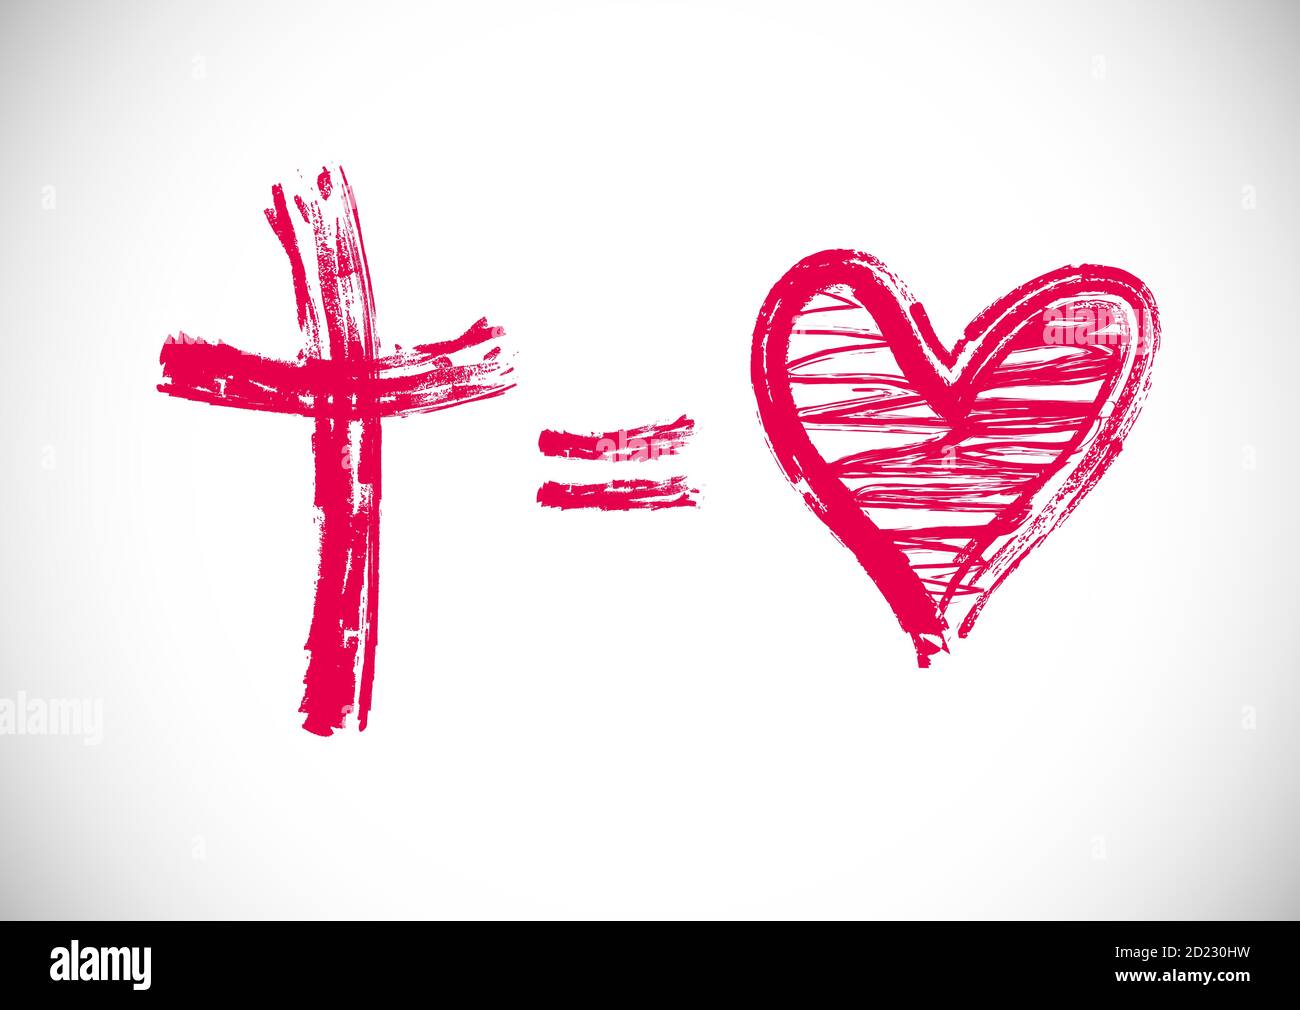 Gott ist Liebe Grußkarte. Cross equals Herz Form kreatives Logo. Religiöse christliche Logo Konzept. Strichsymbol in Pinsel und Kreide einfarbig. Stock Vektor